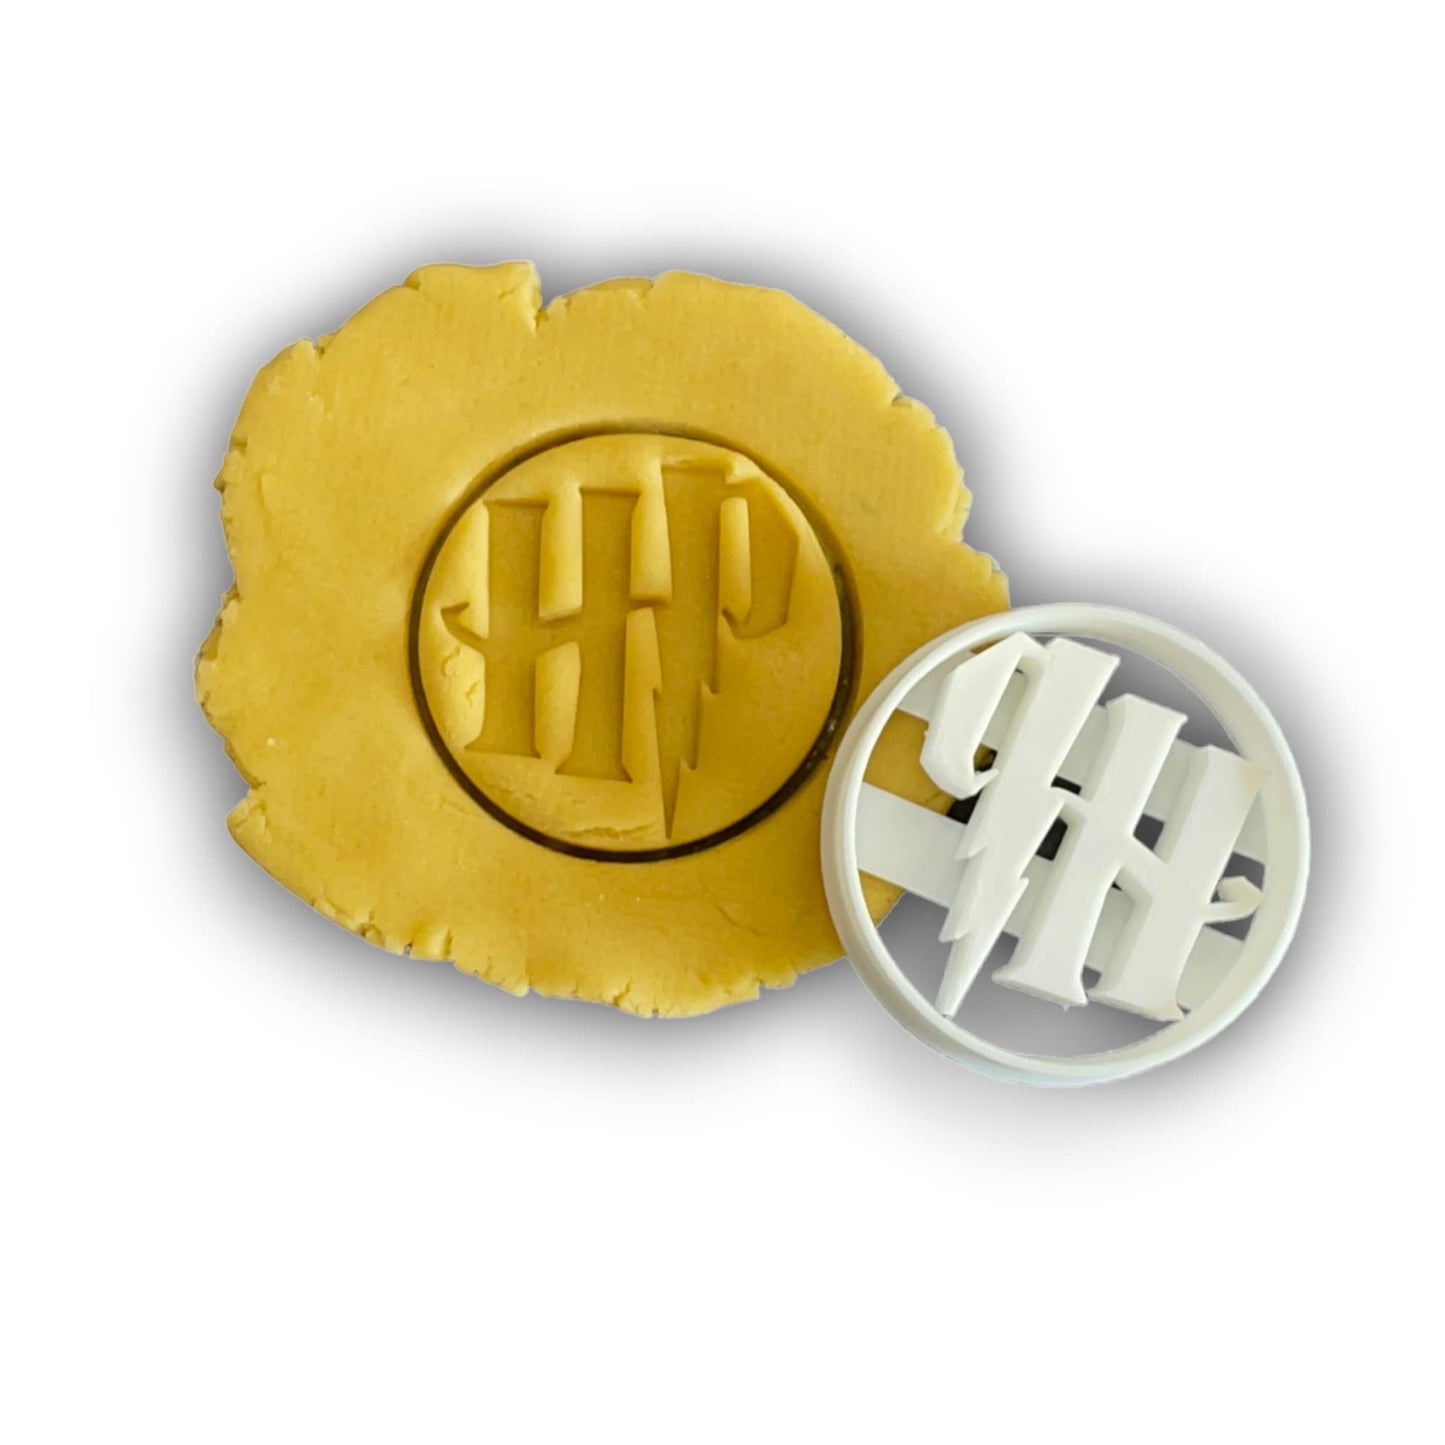 Emporte-pièce Harry Pottter logo HP- Patisserie, sablé, biscuit, pâte à sucre, pâte à modeler-Décoration gâteau-Fait maison-France 3D